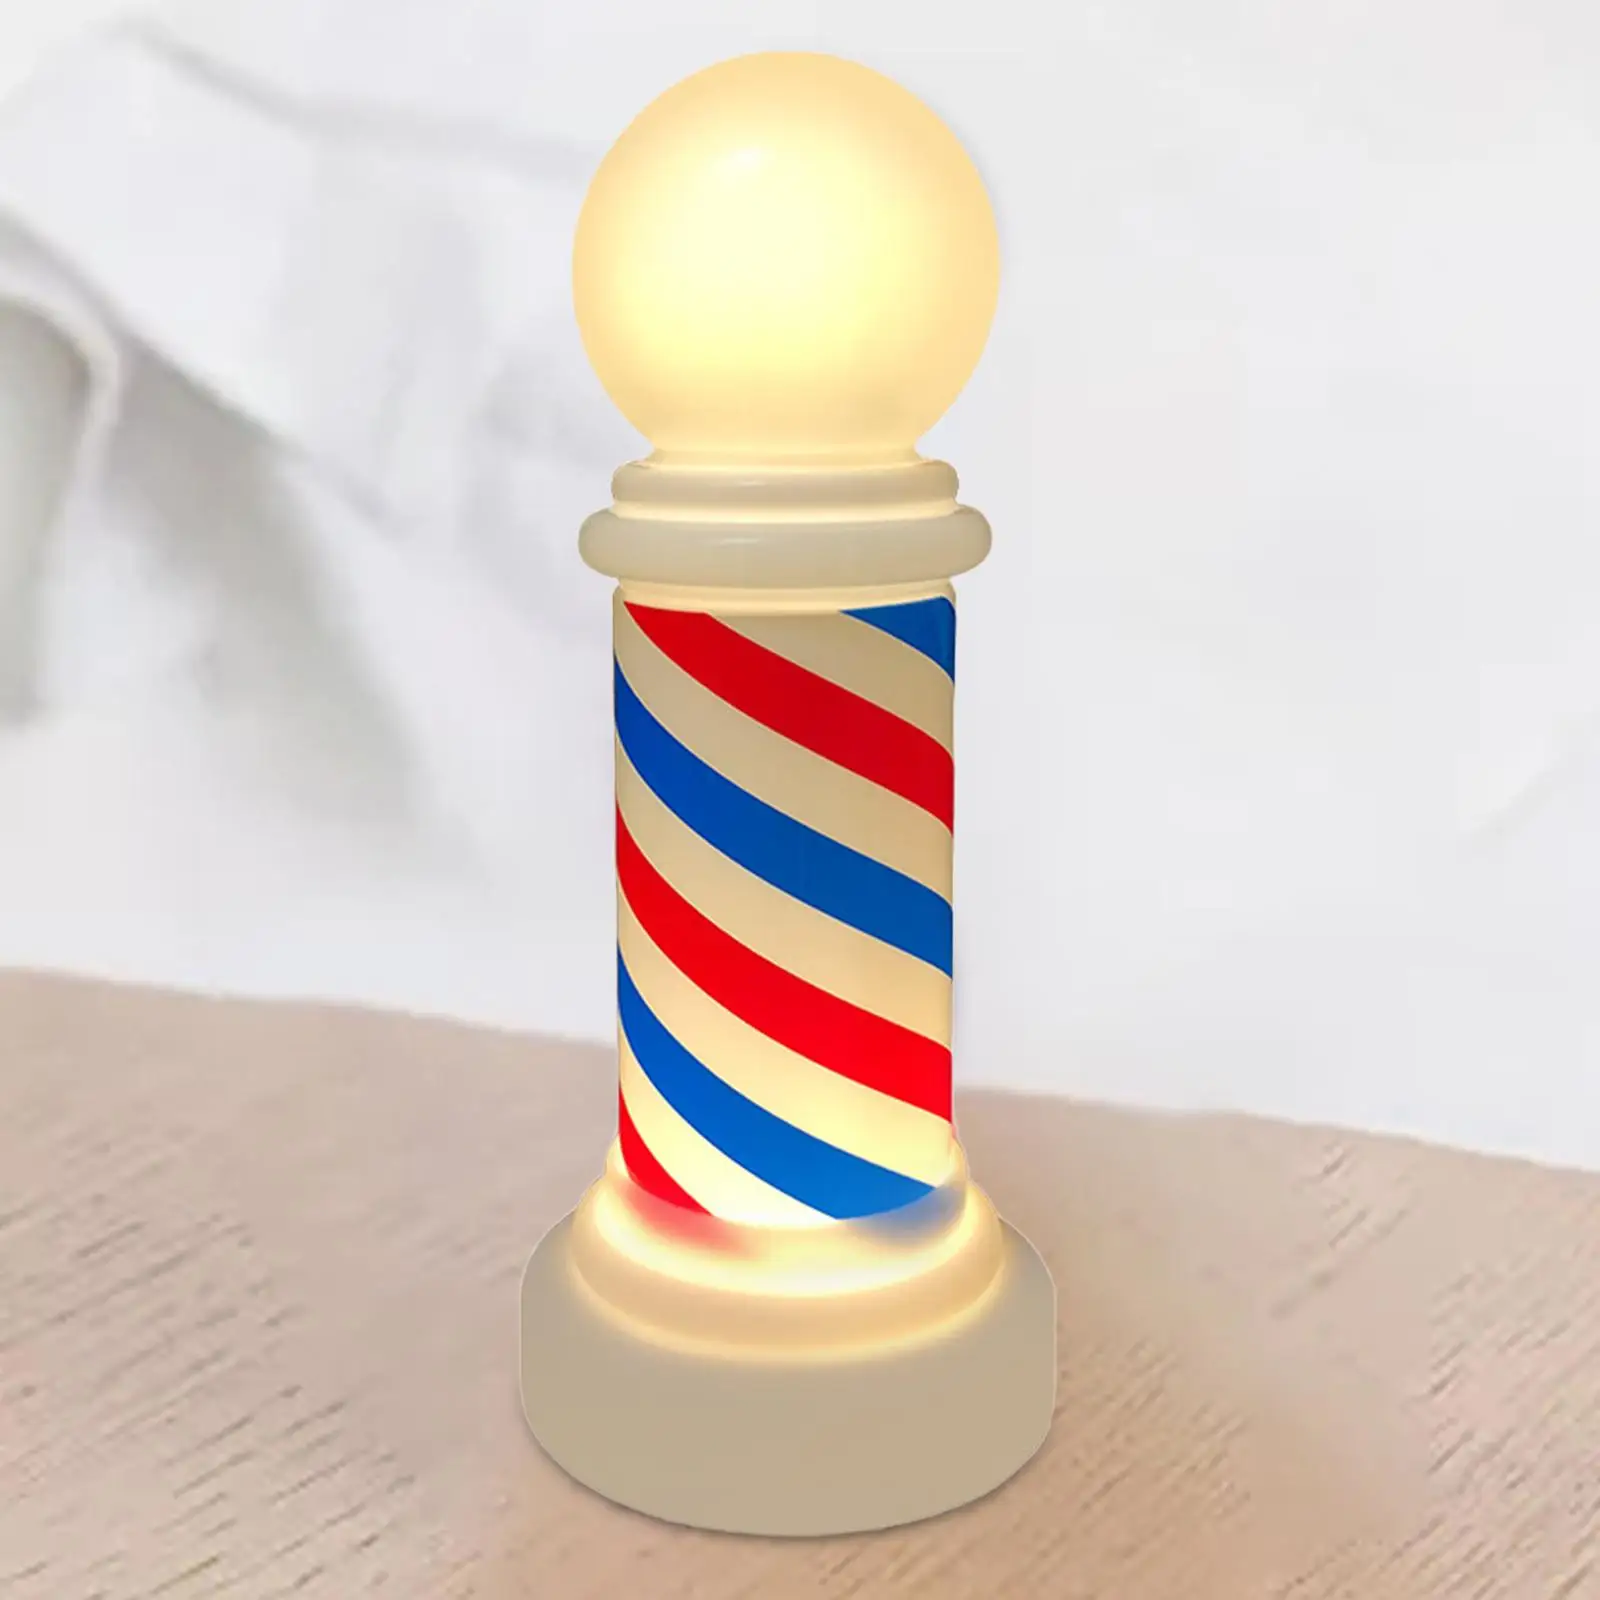 Barber Light Signs Barber Equipment Reusable Delicate Barber Decoration Barber Pole Light for Lamp Barber Shop Hair Salon